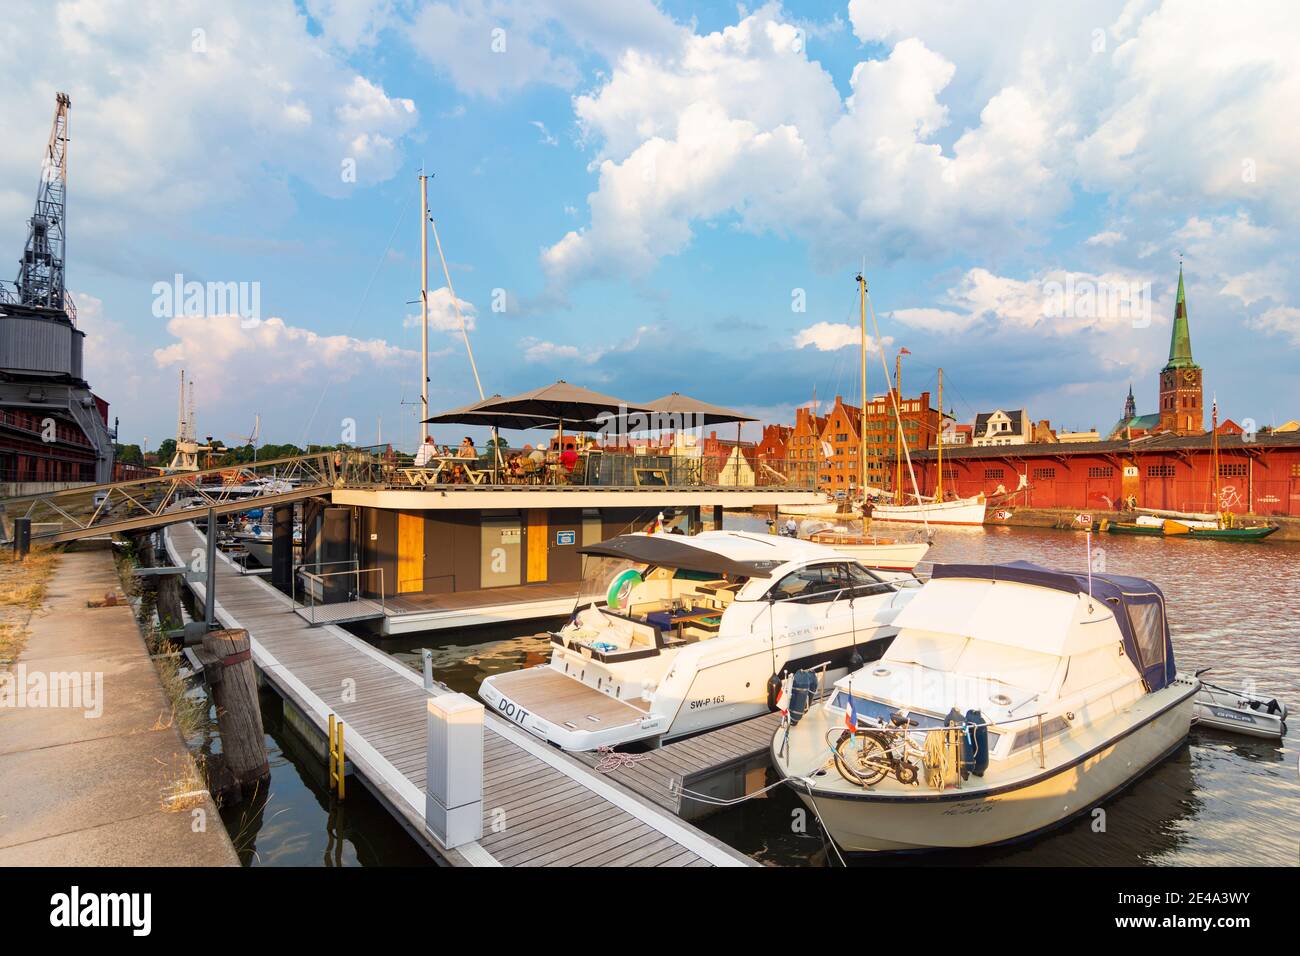 Lübeck, fiume Untertrave, media dock, porto turistico, ristorante, vista sulla città vecchia, Ostsee (Mar Baltico), Schleswig-Holstein, Germania Foto Stock